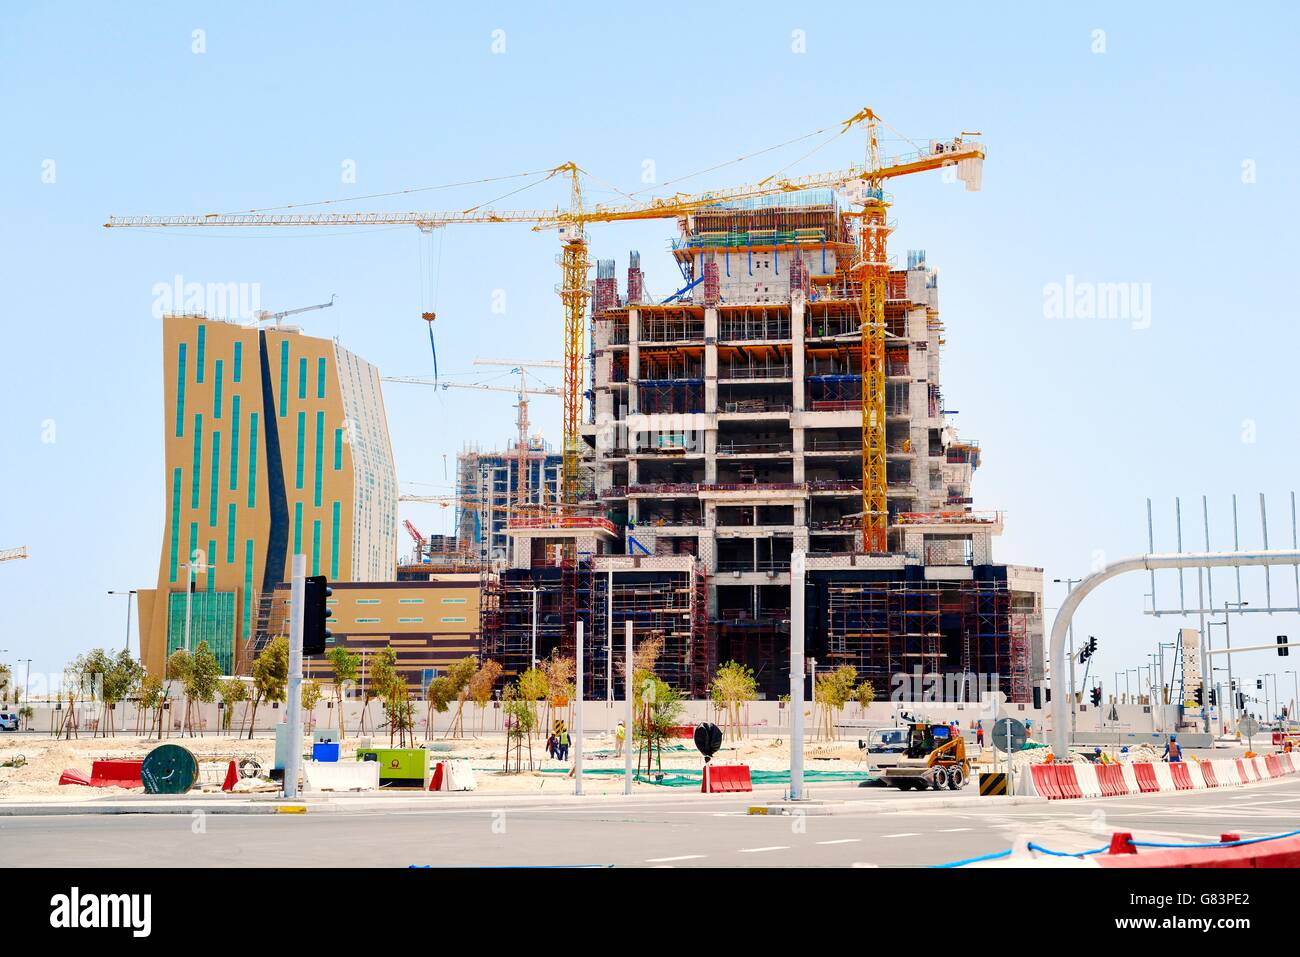 Al bandary torre comercial de ingeniería en construcción. Marina District de rápido desarrollo de la nueva ciudad de lusail, Qatar Foto de stock